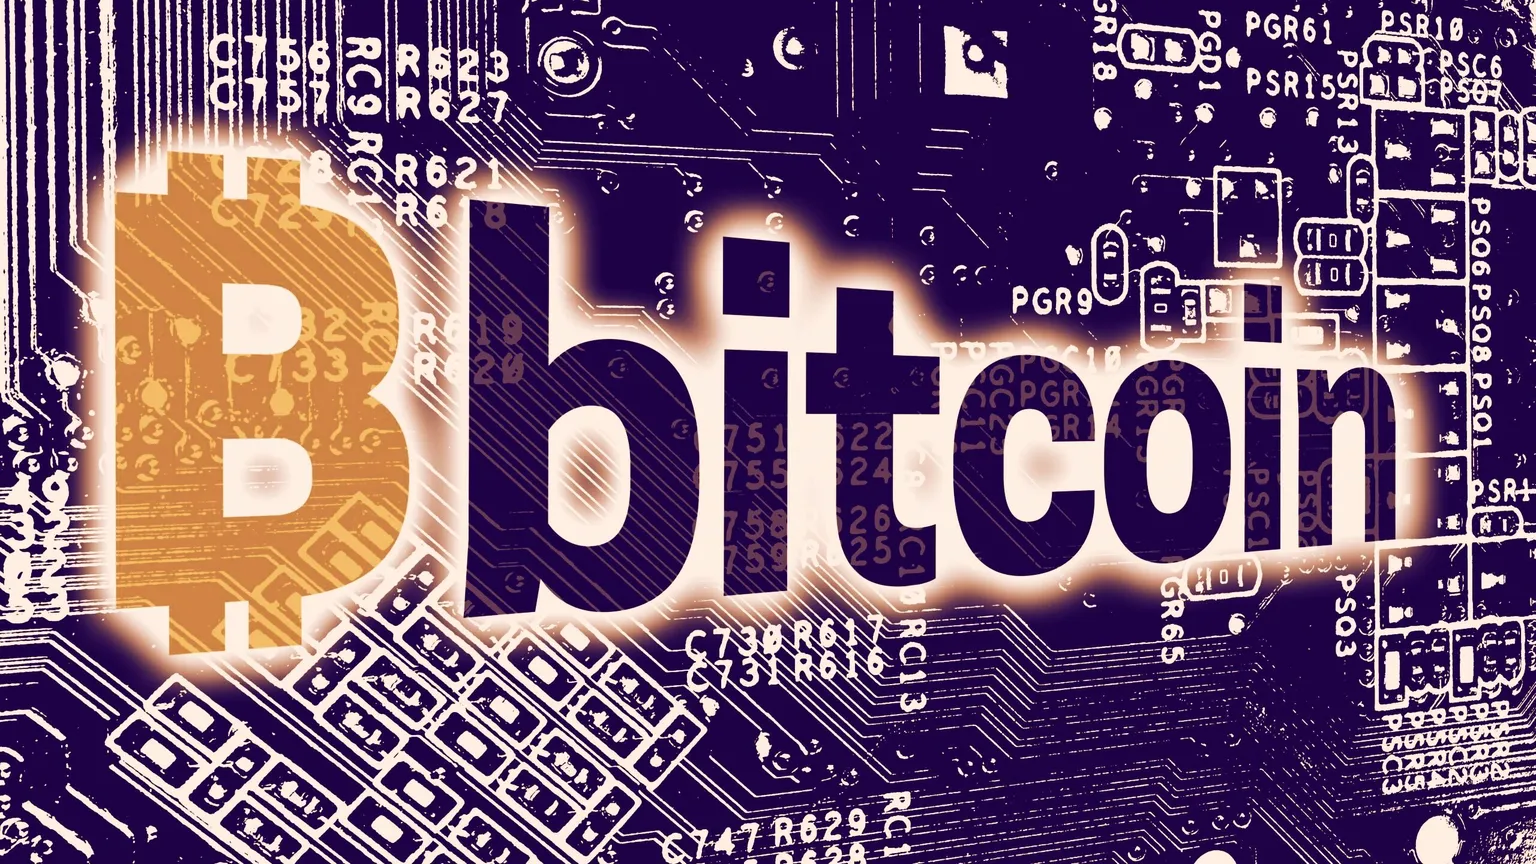 El software de código abierto de Bitcoin se ejecuta en cientos de miles de ordenadores simultáneamente. Imagen: Shutterstock